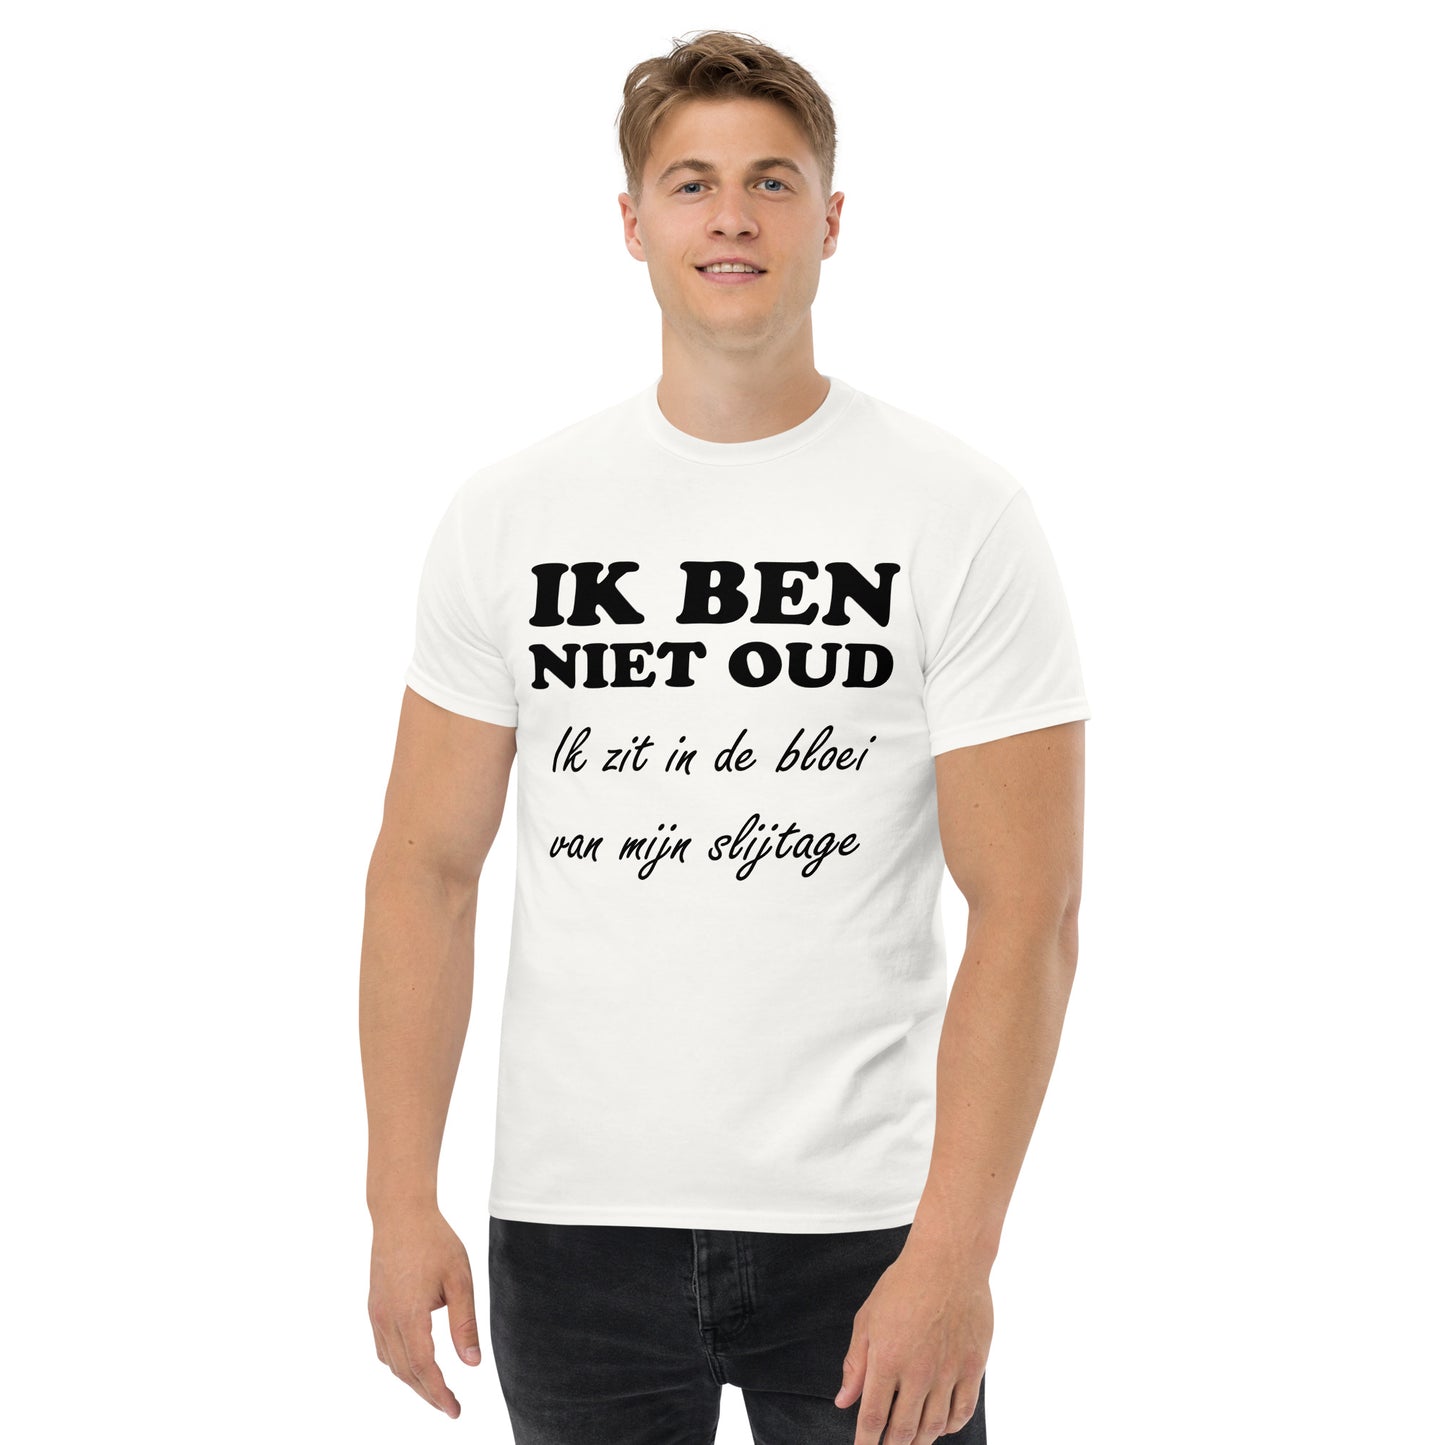 Whith T-shirt with the text "IK BEN NIET OUD ik zit in de bloei van mijn slijtage"